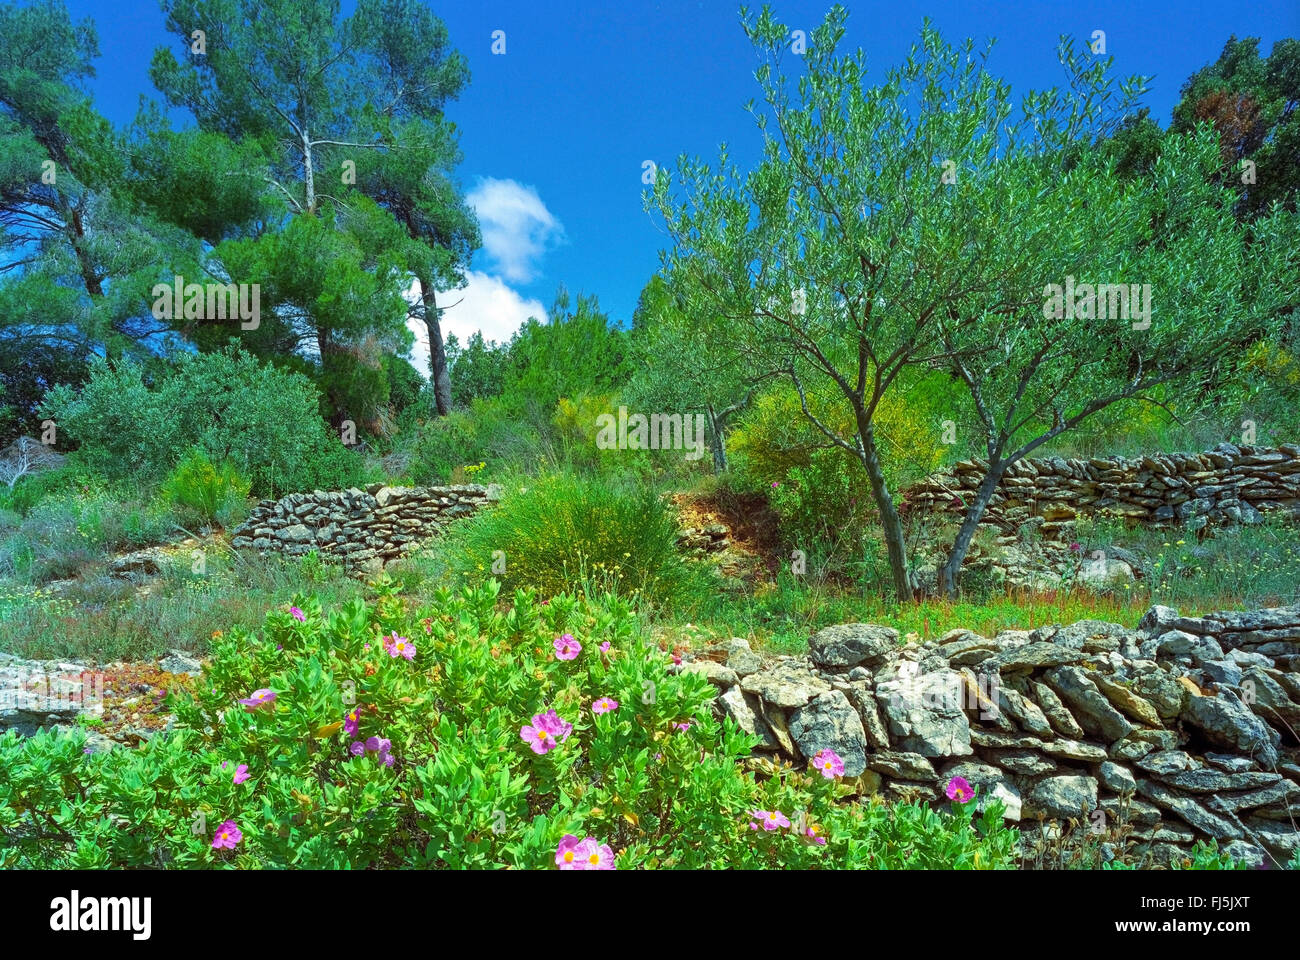 Incolto i muri in pietra naturale in primavera, Francia Provenza, Draguignan, Draguignan Foto Stock